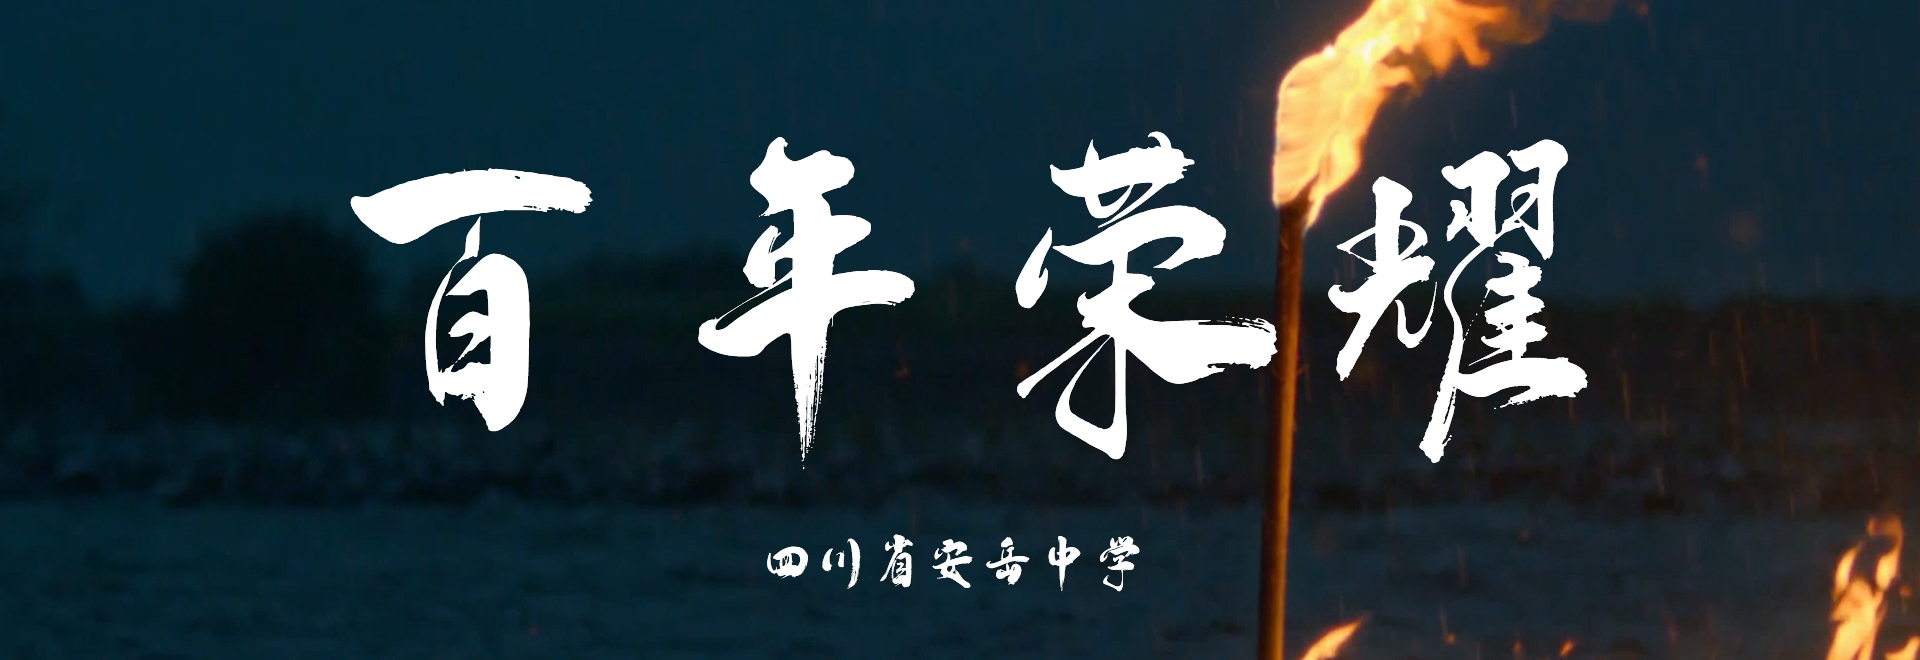 安岳中学宣传片 导演版-《百年荣耀》